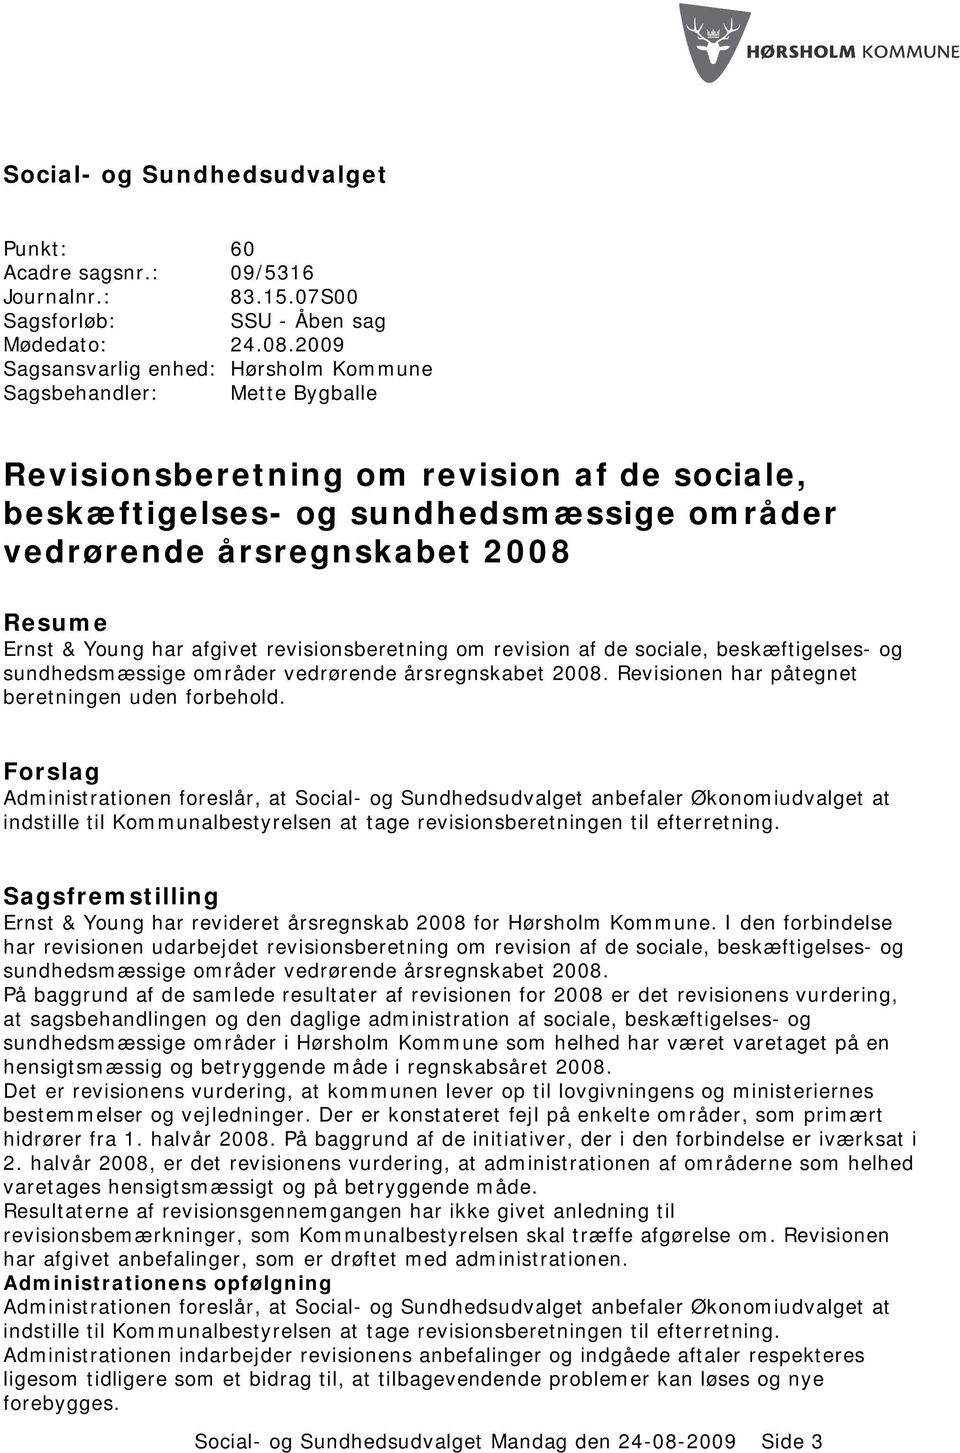 Ernst & Young har afgivet revisionsberetning om revision af de sociale, beskæftigelses- og sundhedsmæssige områder vedrørende årsregnskabet 2008. Revisionen har påtegnet beretningen uden forbehold.